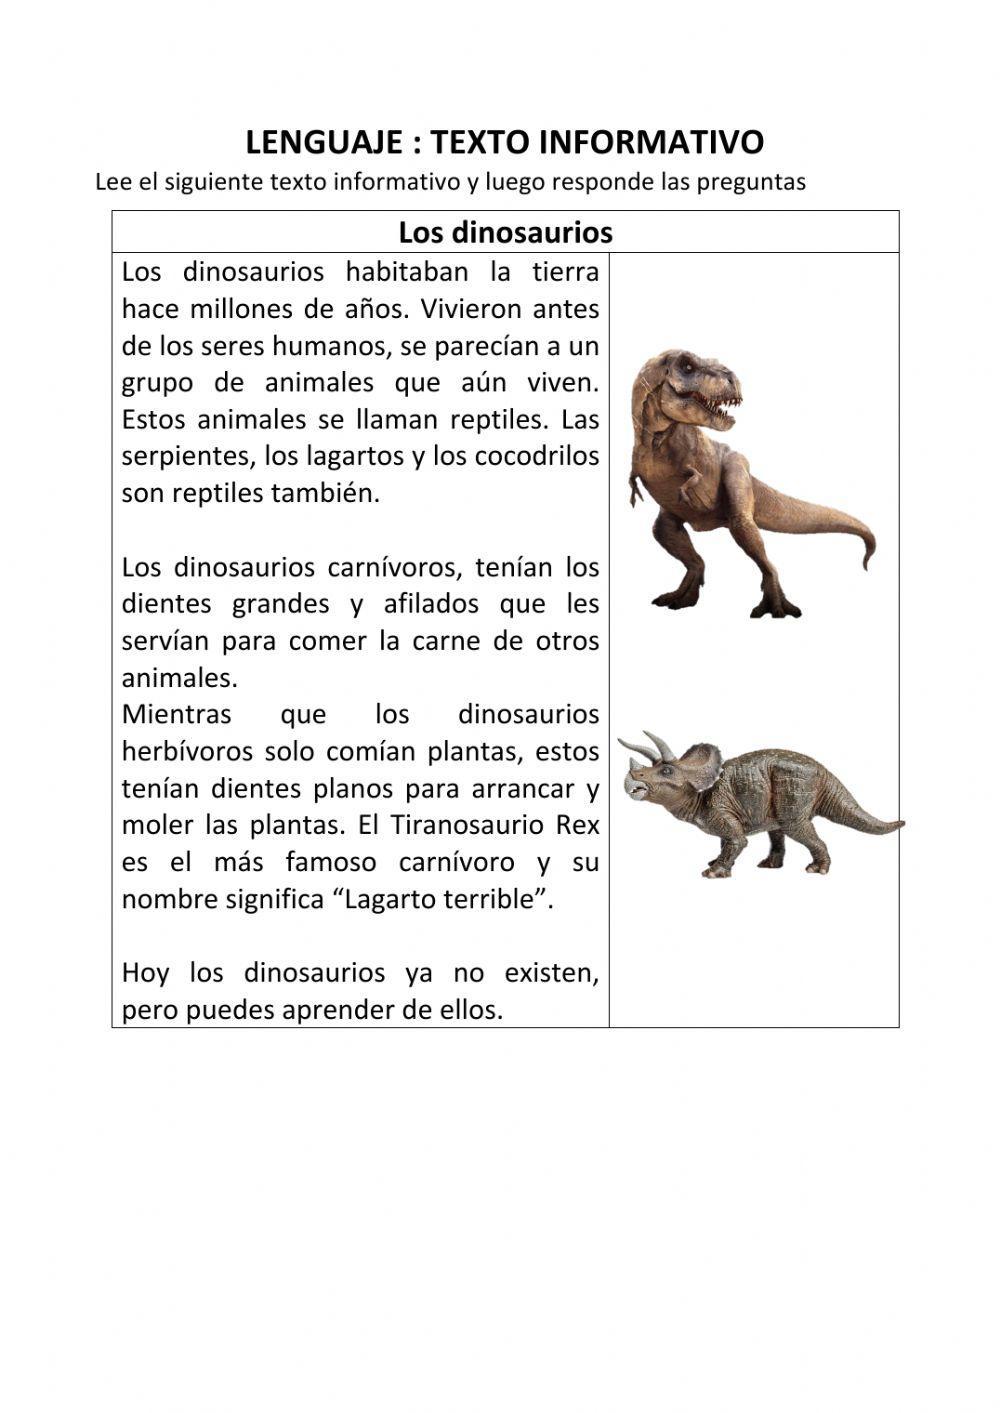 Texto informativo - Los dinosaurios